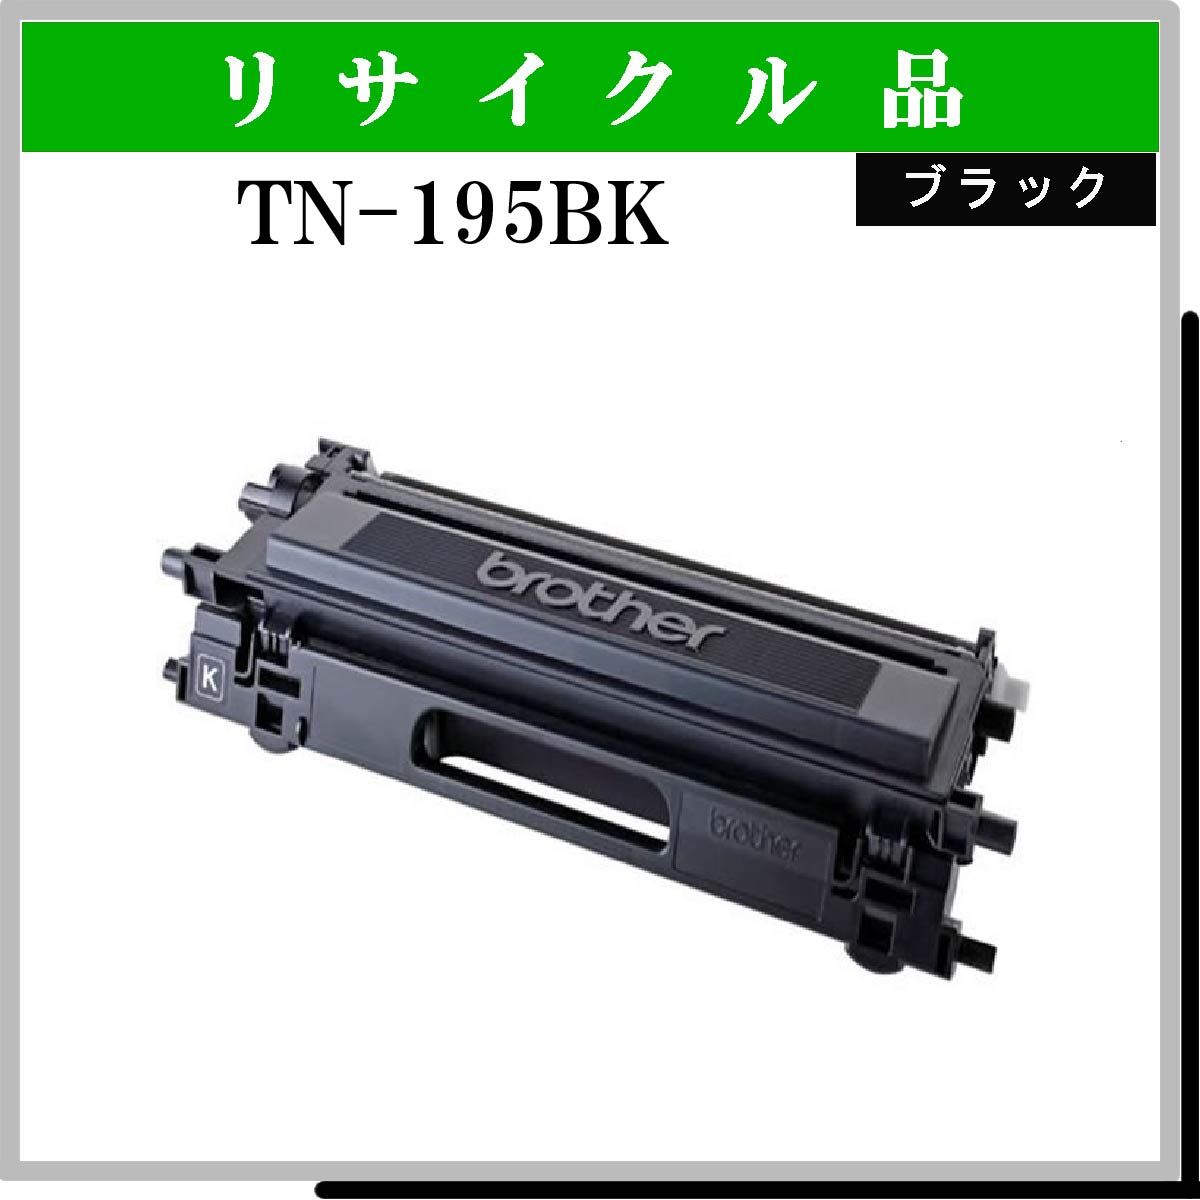 TN-195BK